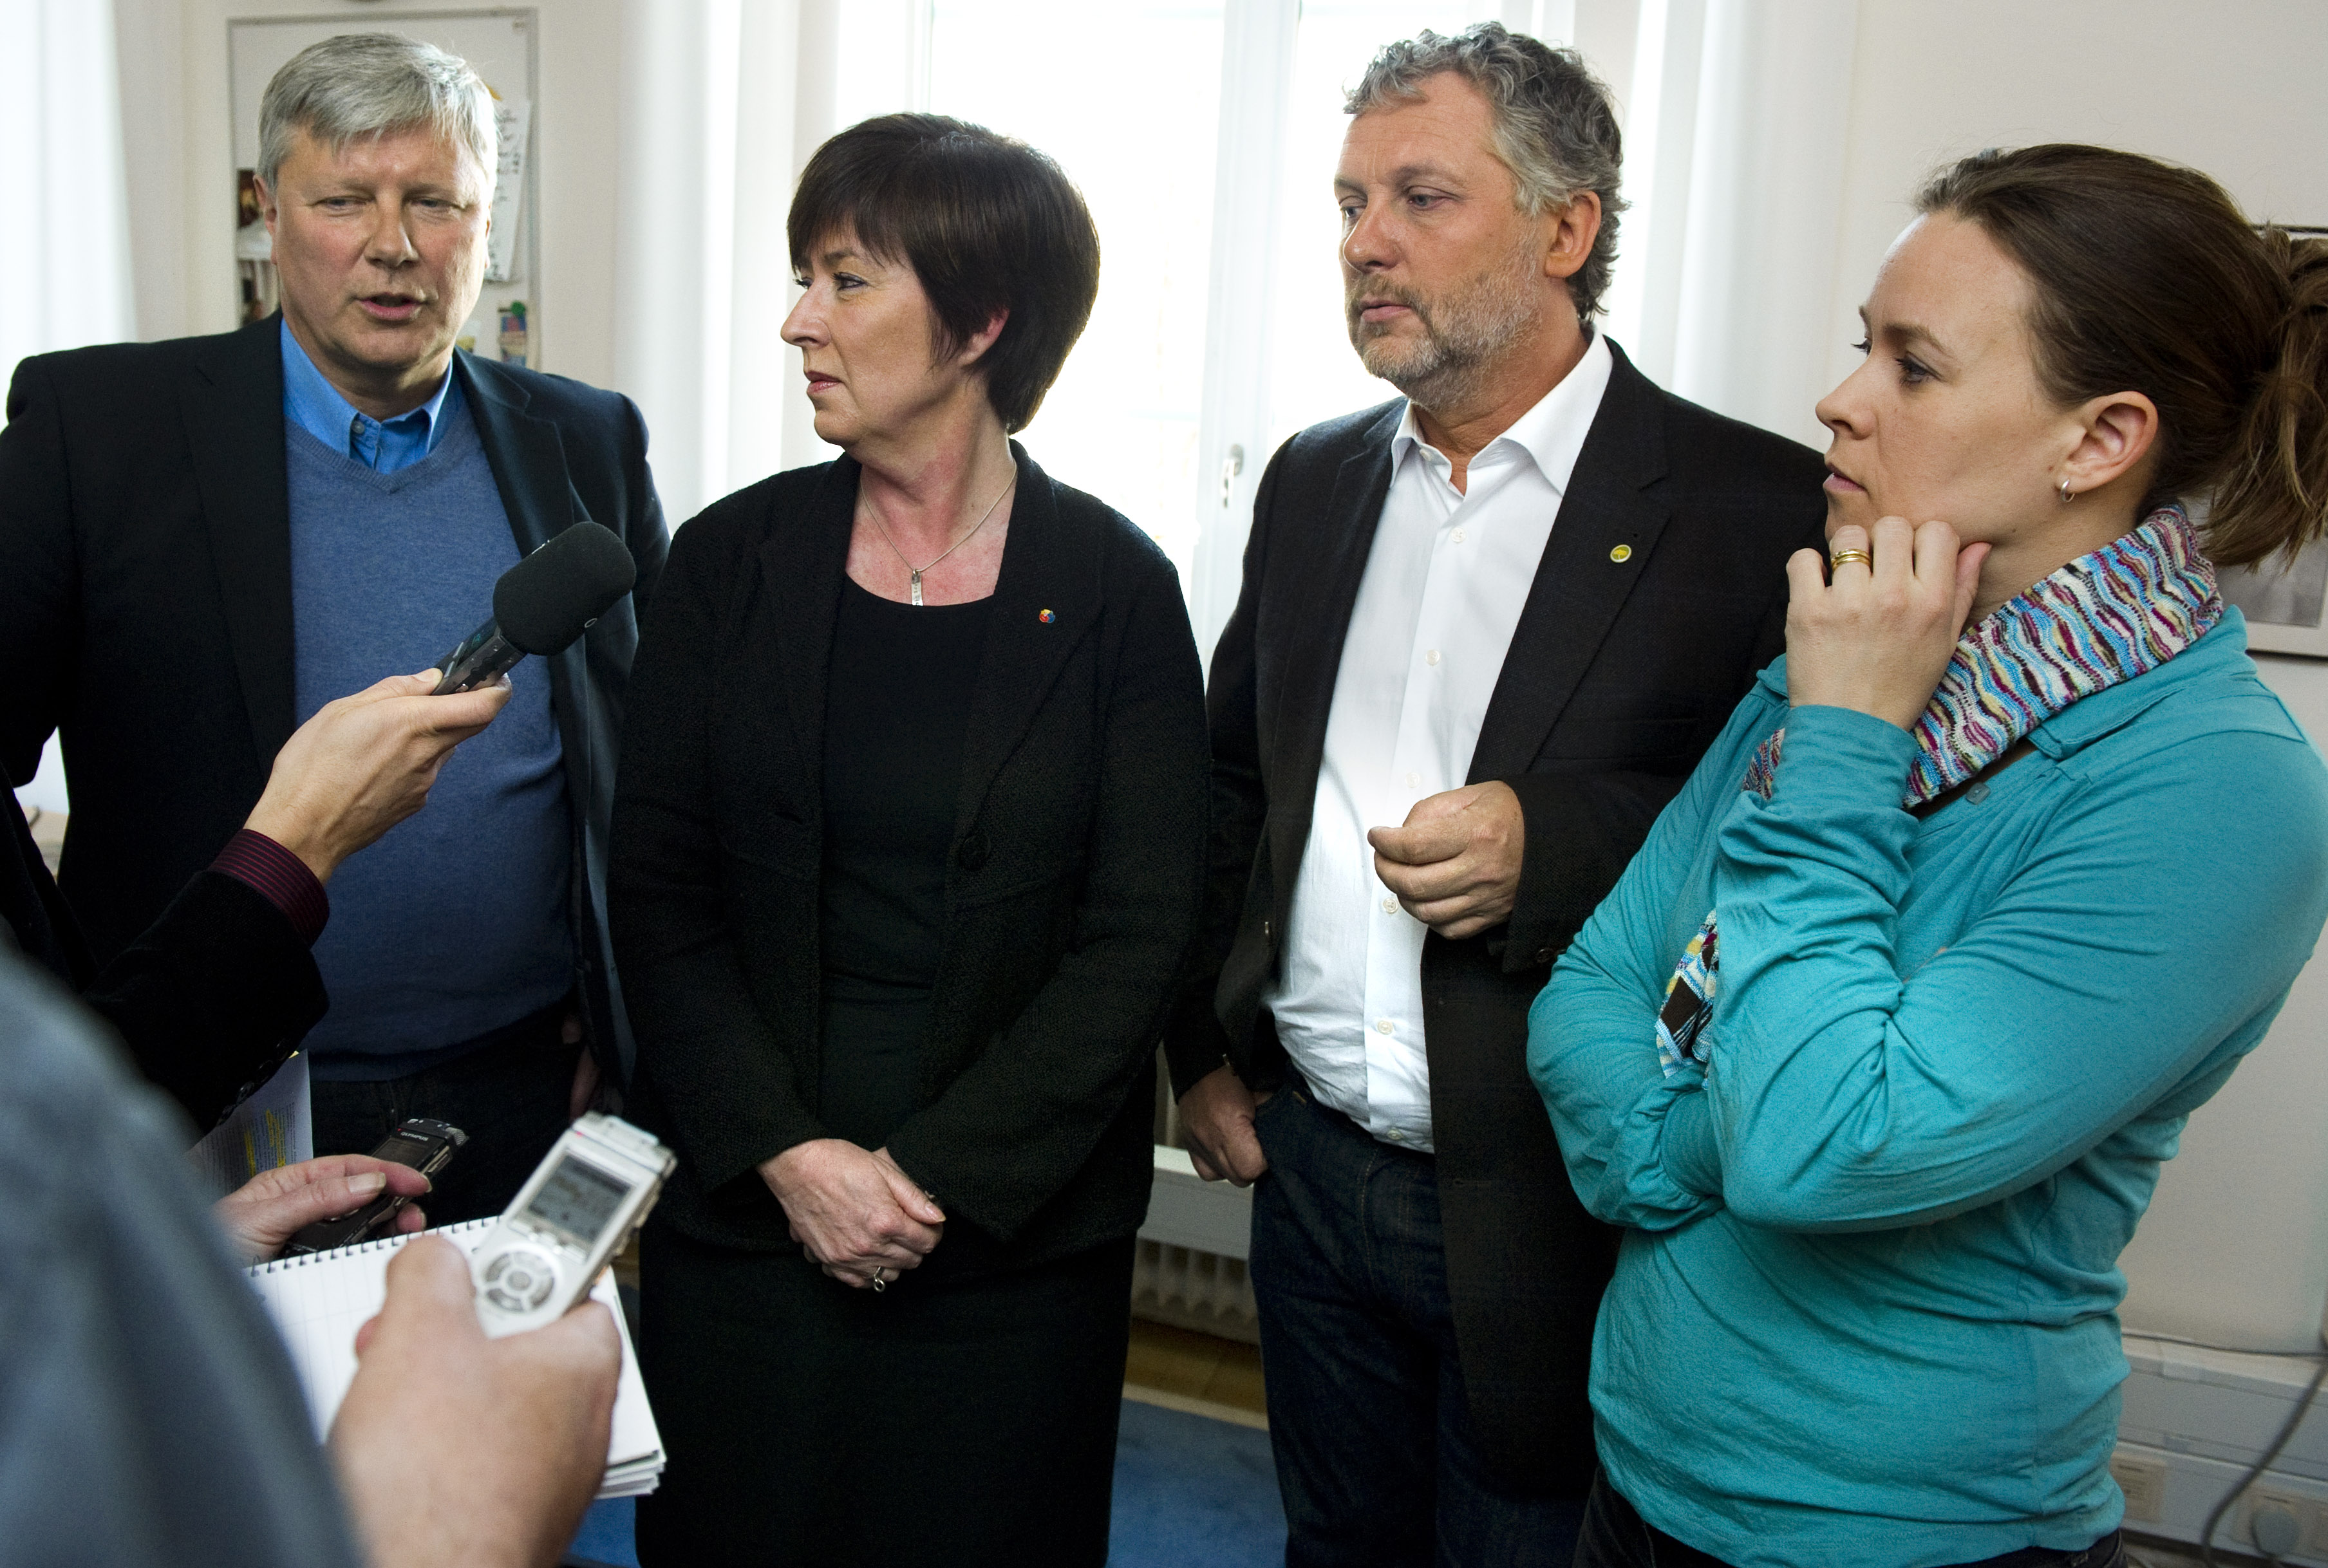 Alliansen, Opinionsundersökning, Novus, Riksdagsvalet 2010, Rödgröna regeringen